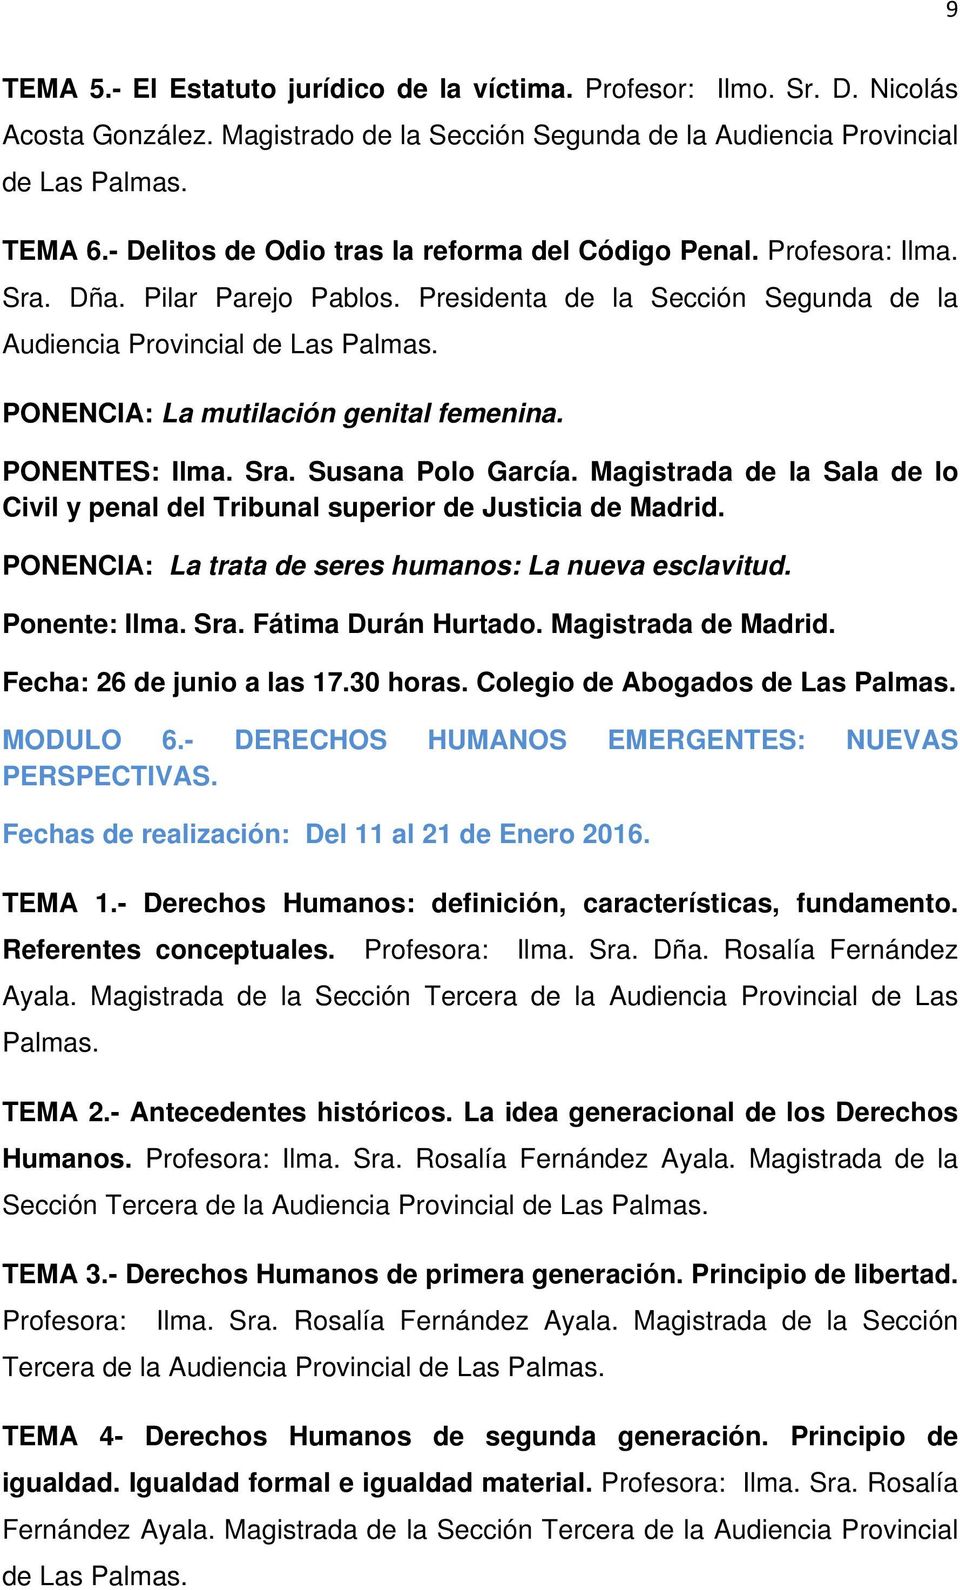 PONENCIA: La mutilación genital femenina. PONENTES: Ilma. Sra. Susana Polo García. Magistrada de la Sala de lo Civil y penal del Tribunal superior de Justicia de Madrid.